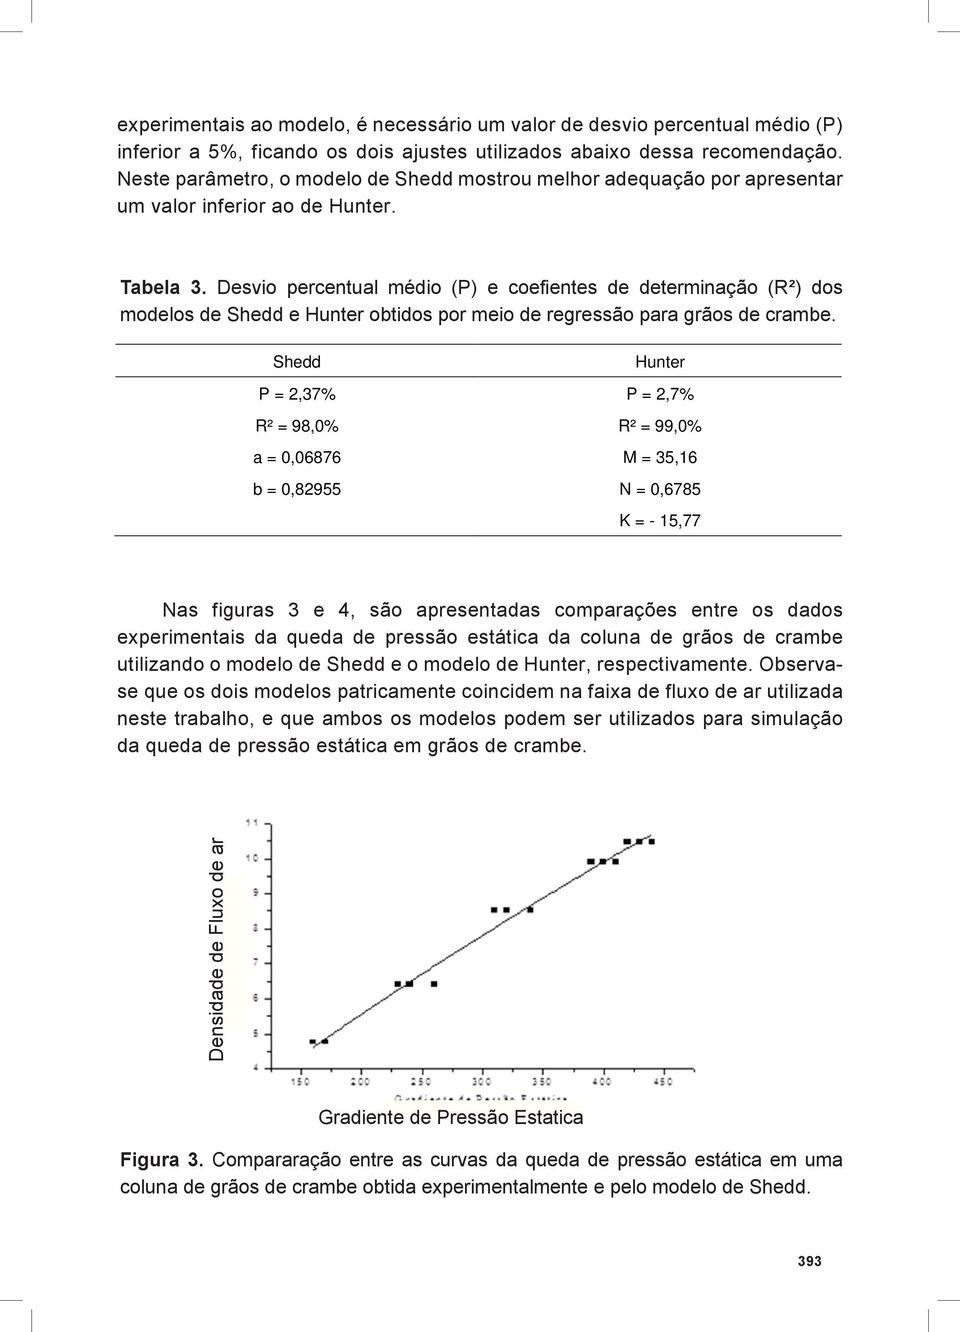 Desvio percentual médio (P) e coefientes de determinação (R²) dos modelos de Shedd e Hunter obtidos por meio de regressão para grãos de crambe.